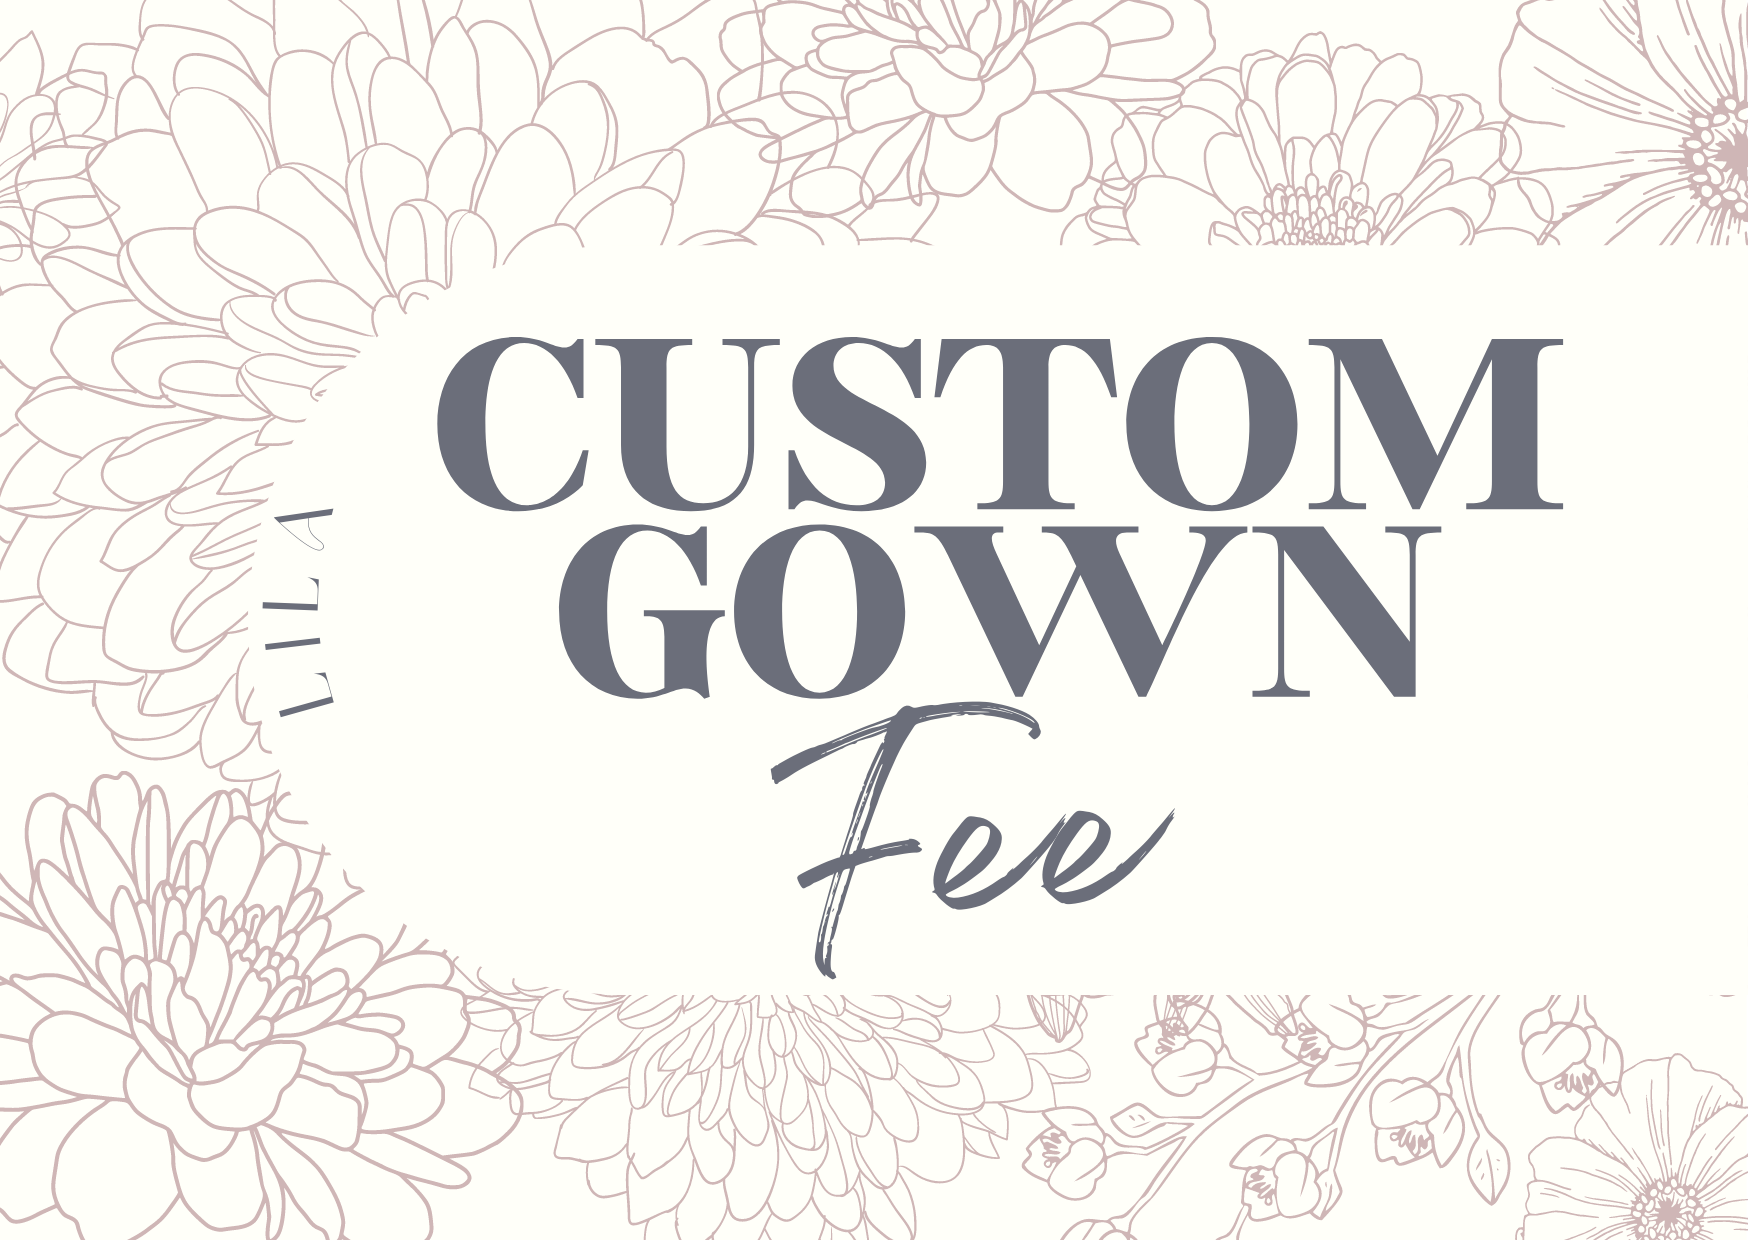 Custom Gown Add-On Fee